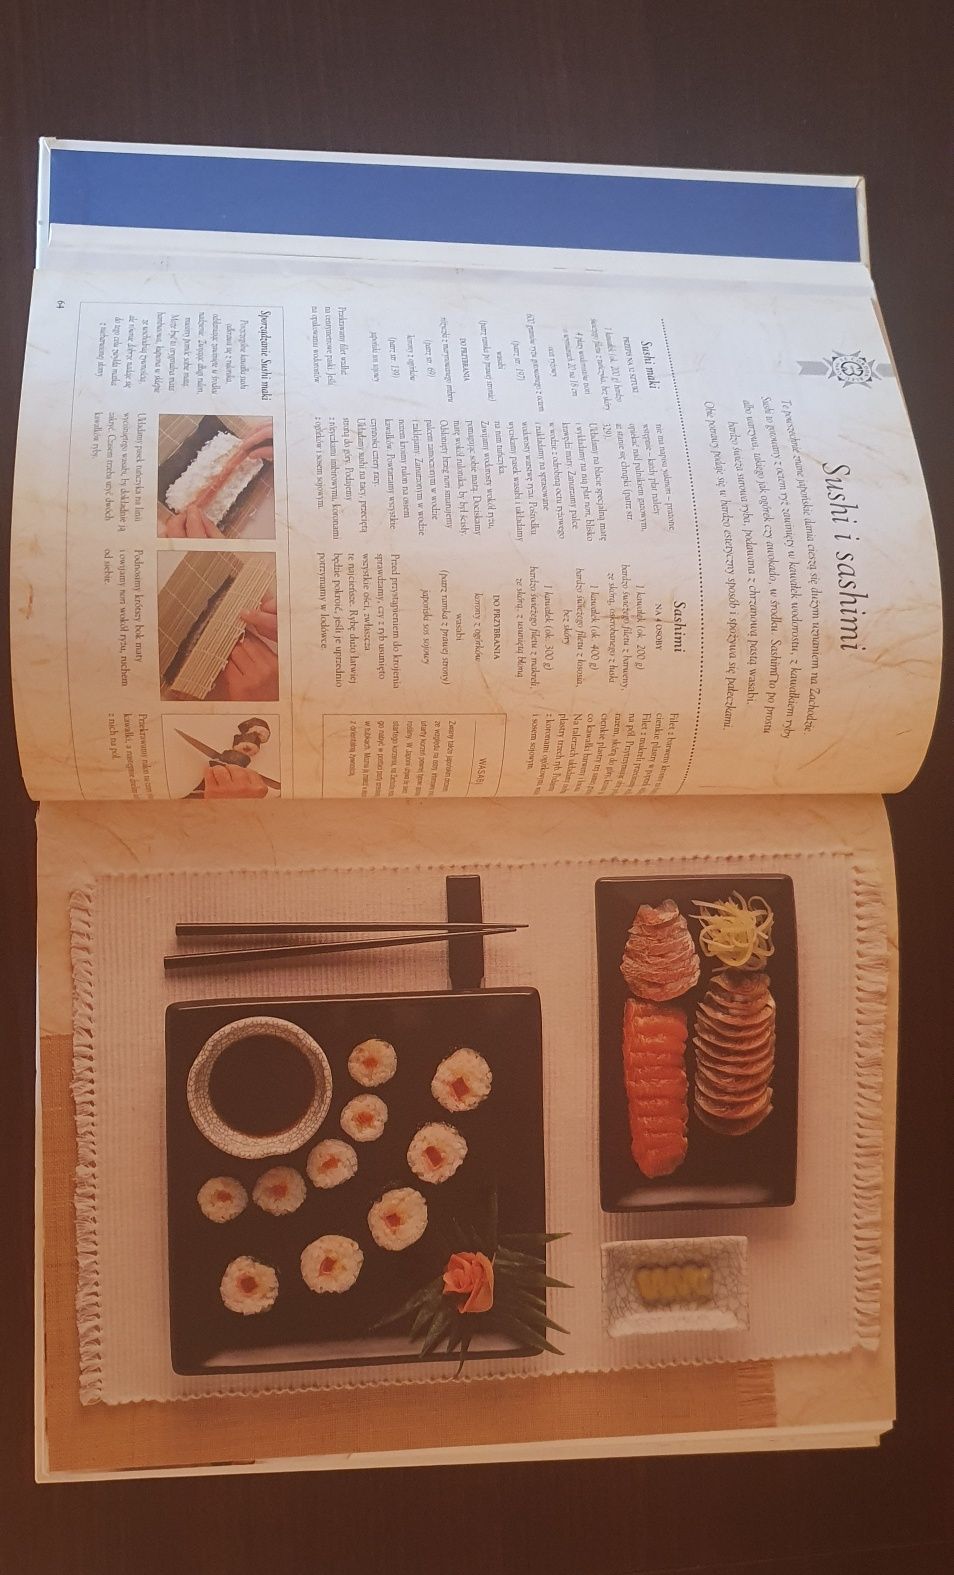 Techniki gotowania, książka kucharska